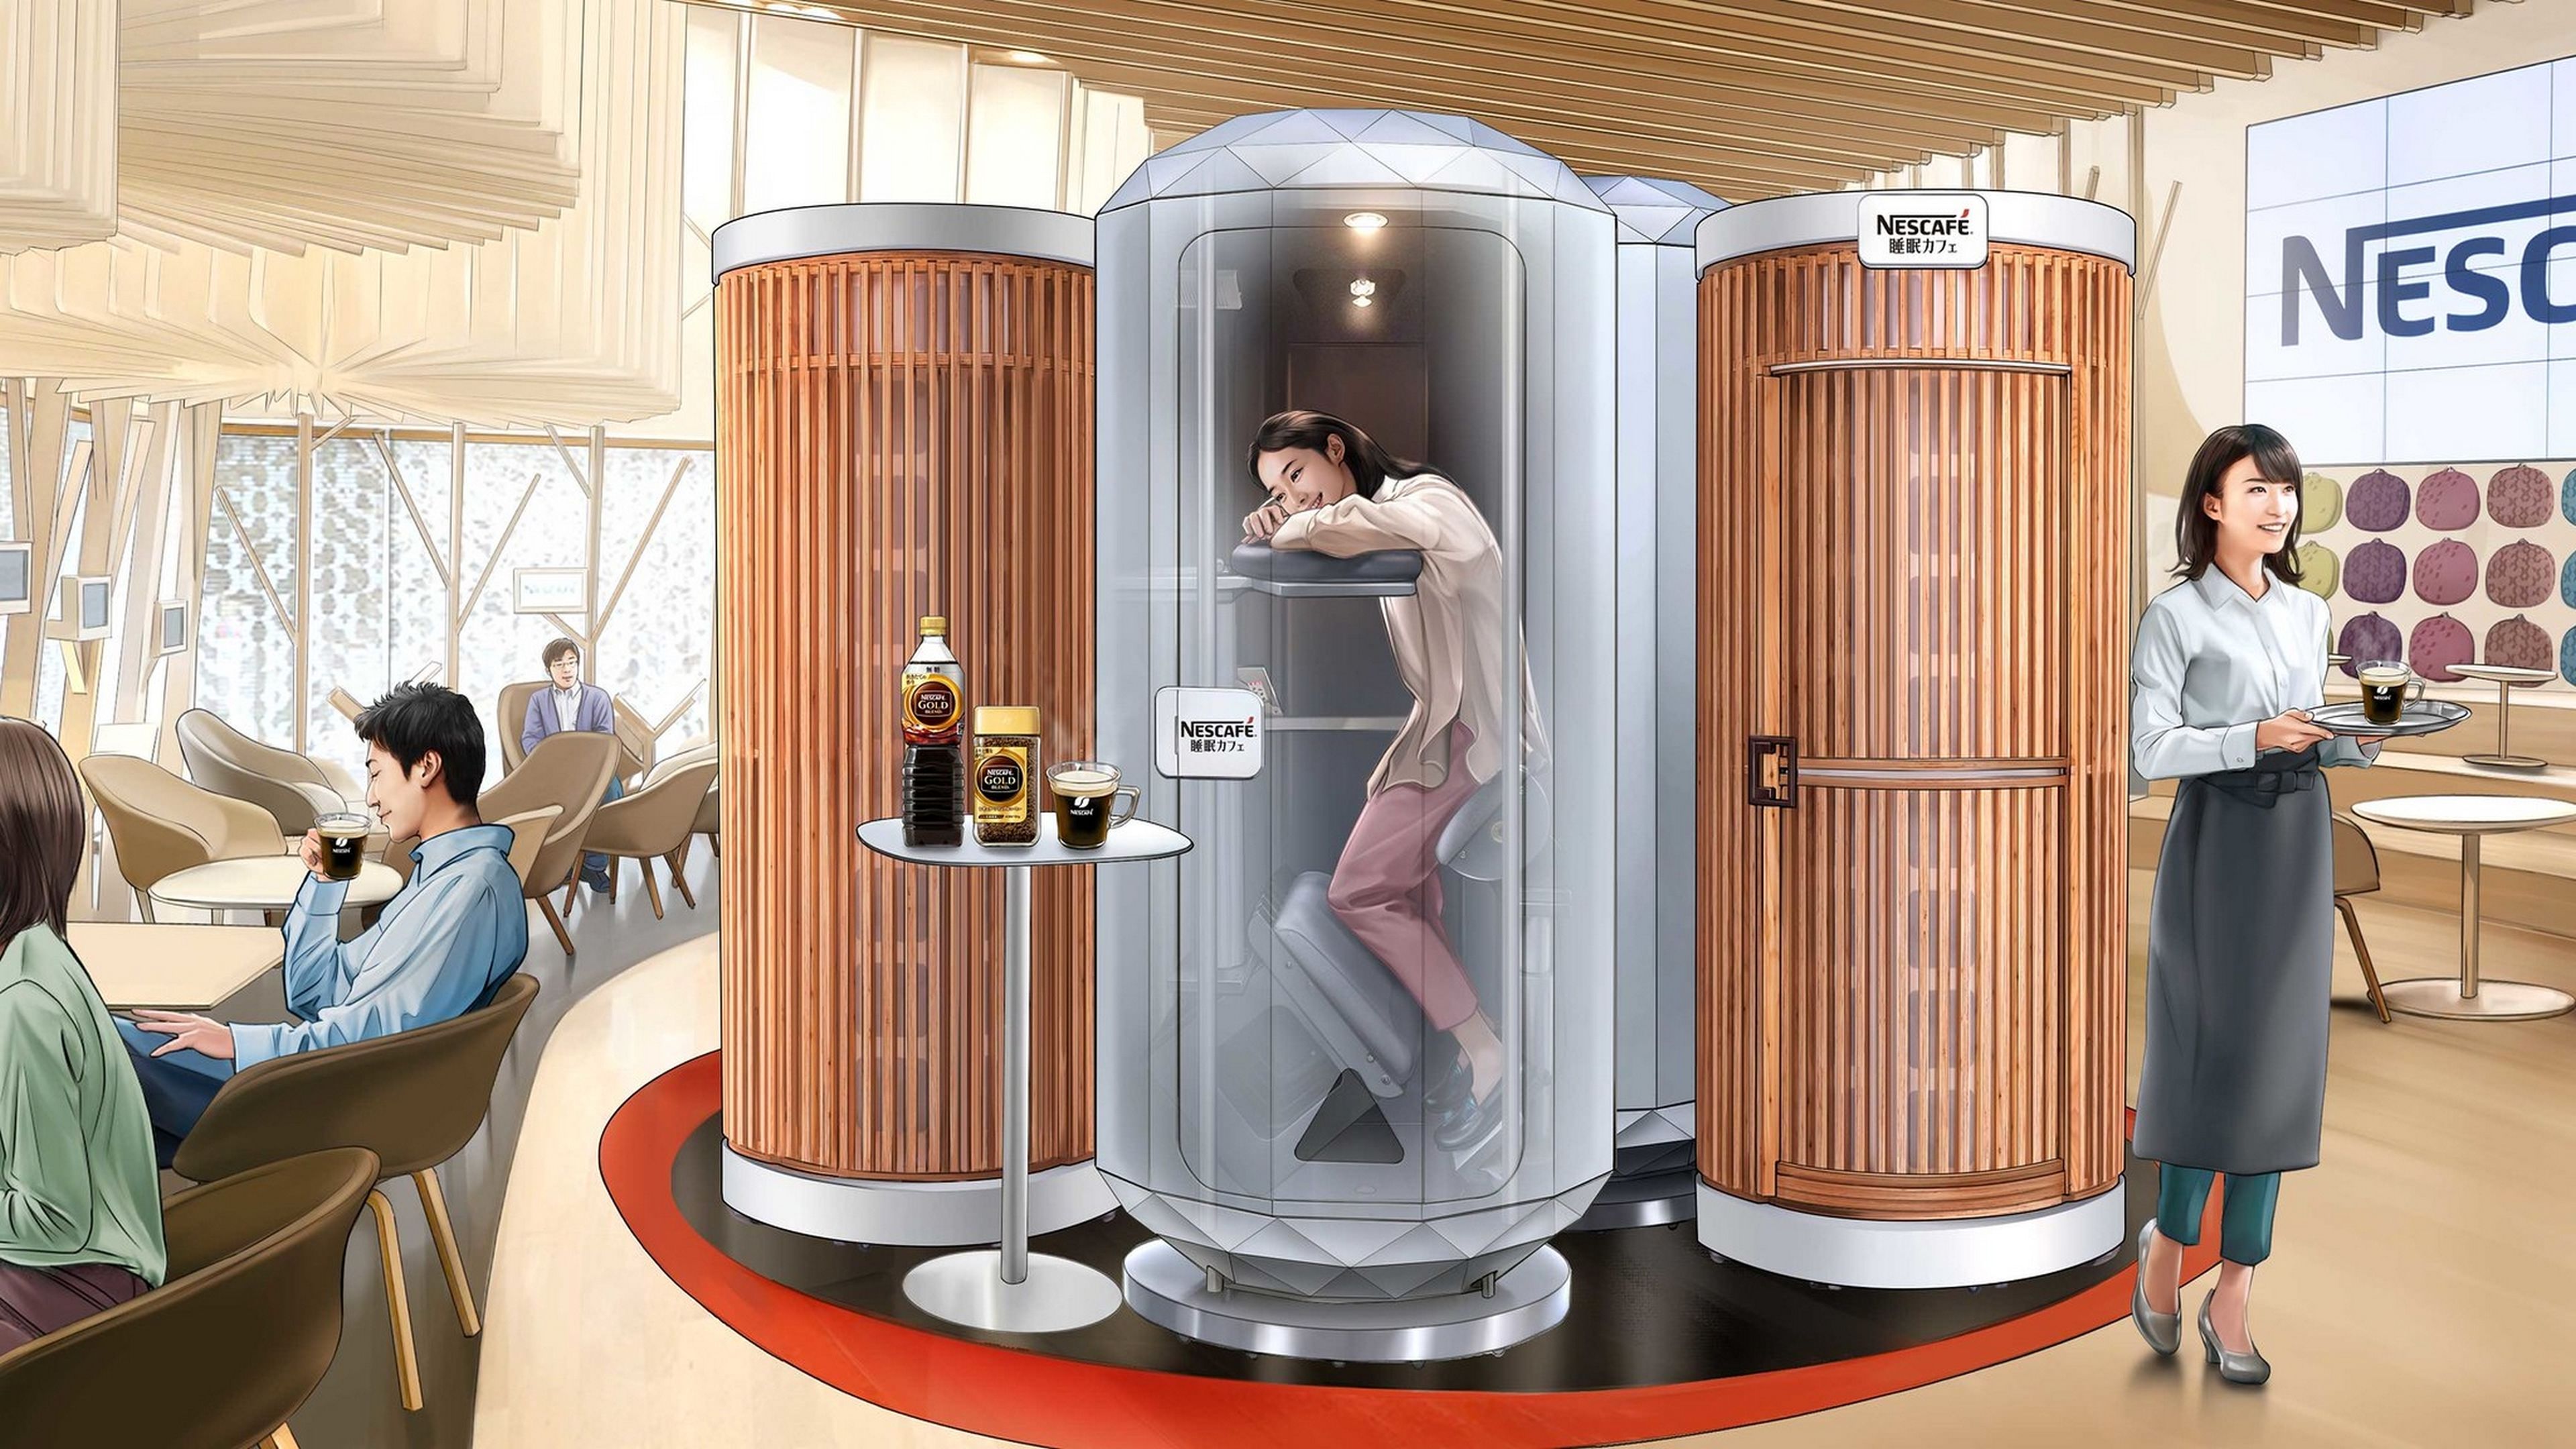 Las cápsulas para dormir de pie que están instalando en las cafeterías japonesas